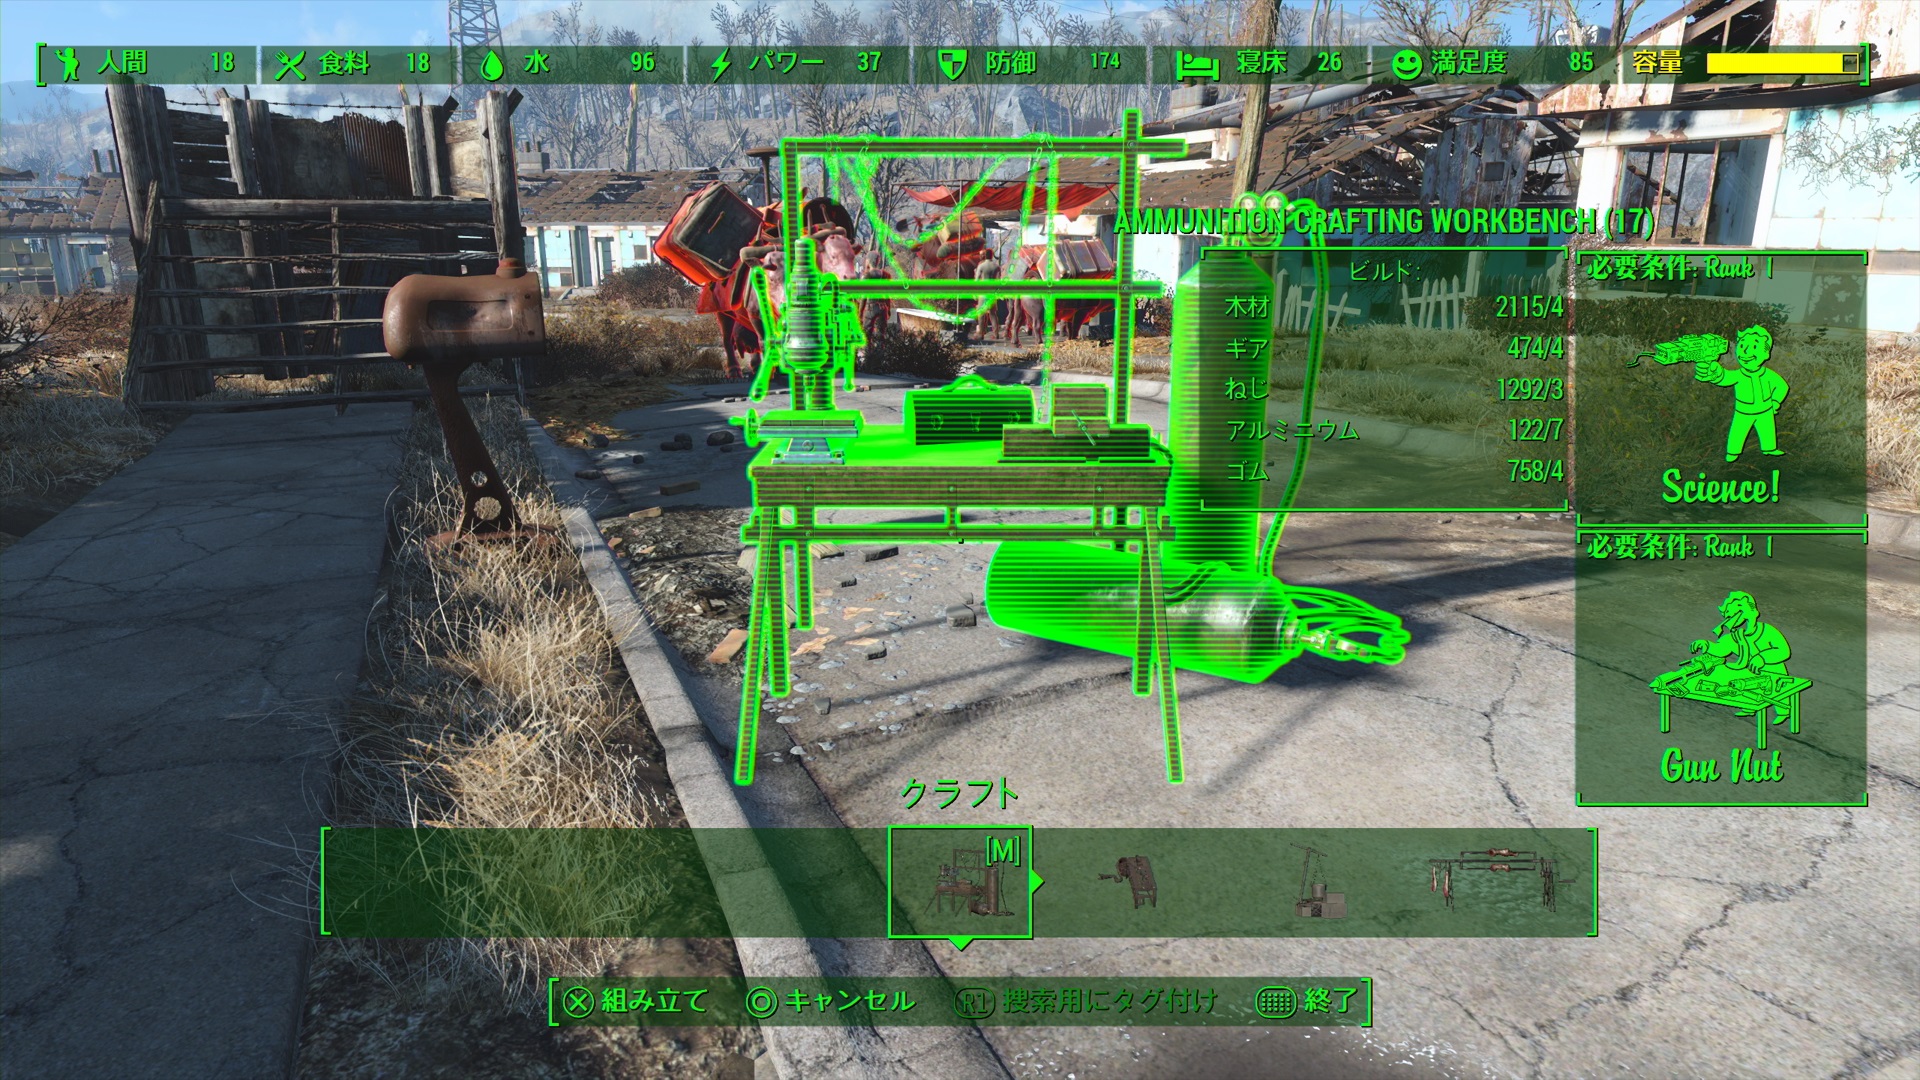 Fallout 4 верстак для роботов все модификации фото 88